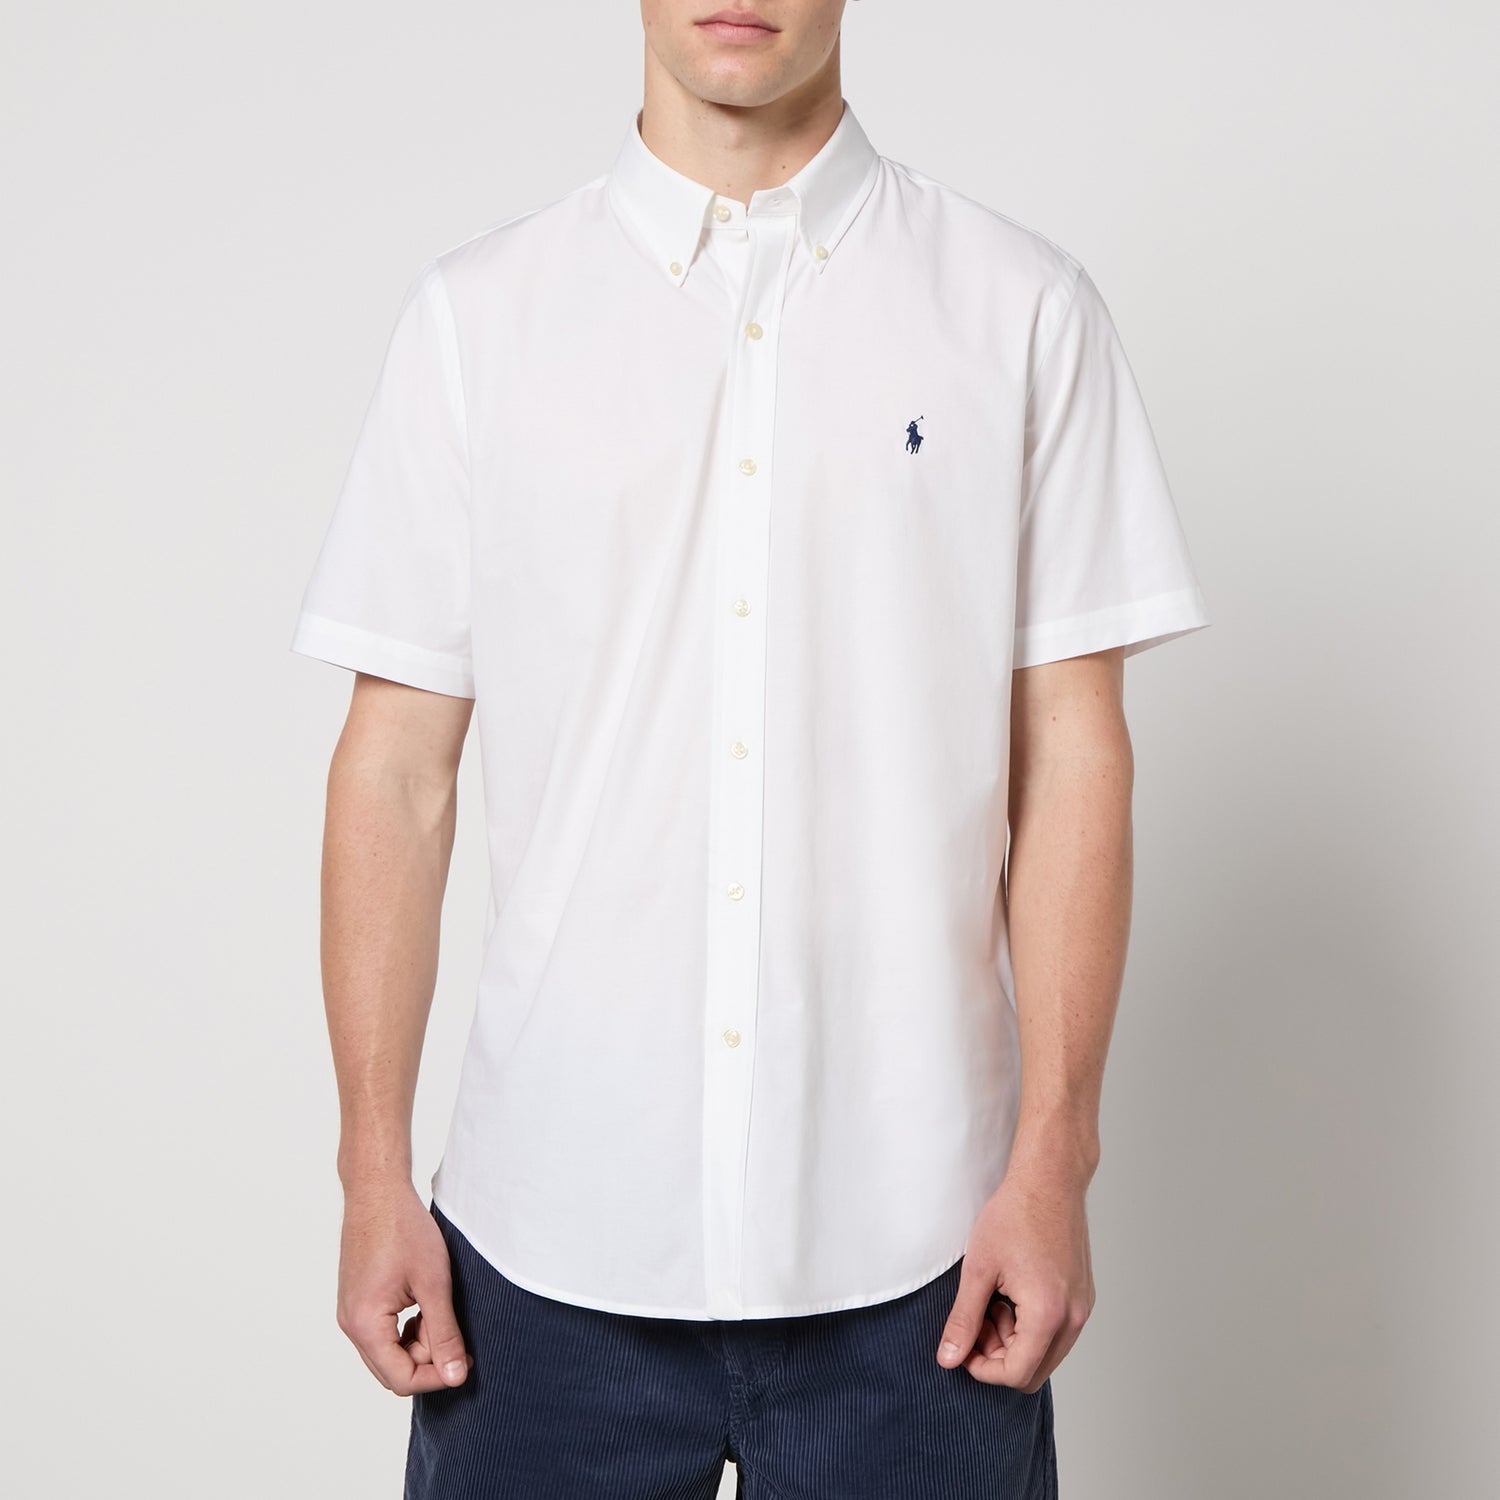 Polo Ralph Lauren Men's Poplin Short Sleeve Shirt - White - S